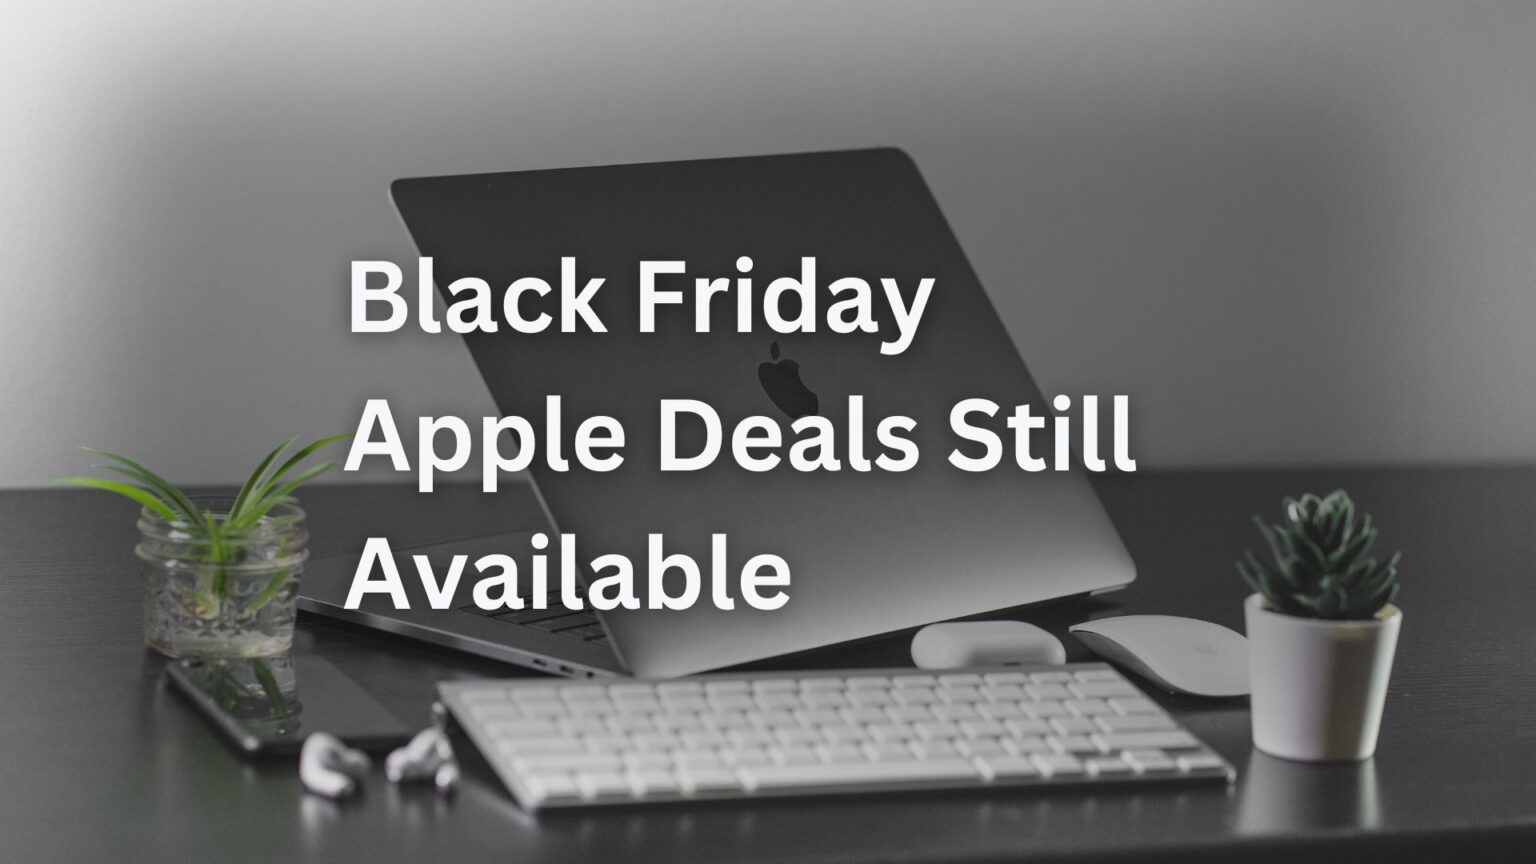 Black Friday Apple Deals Still Live